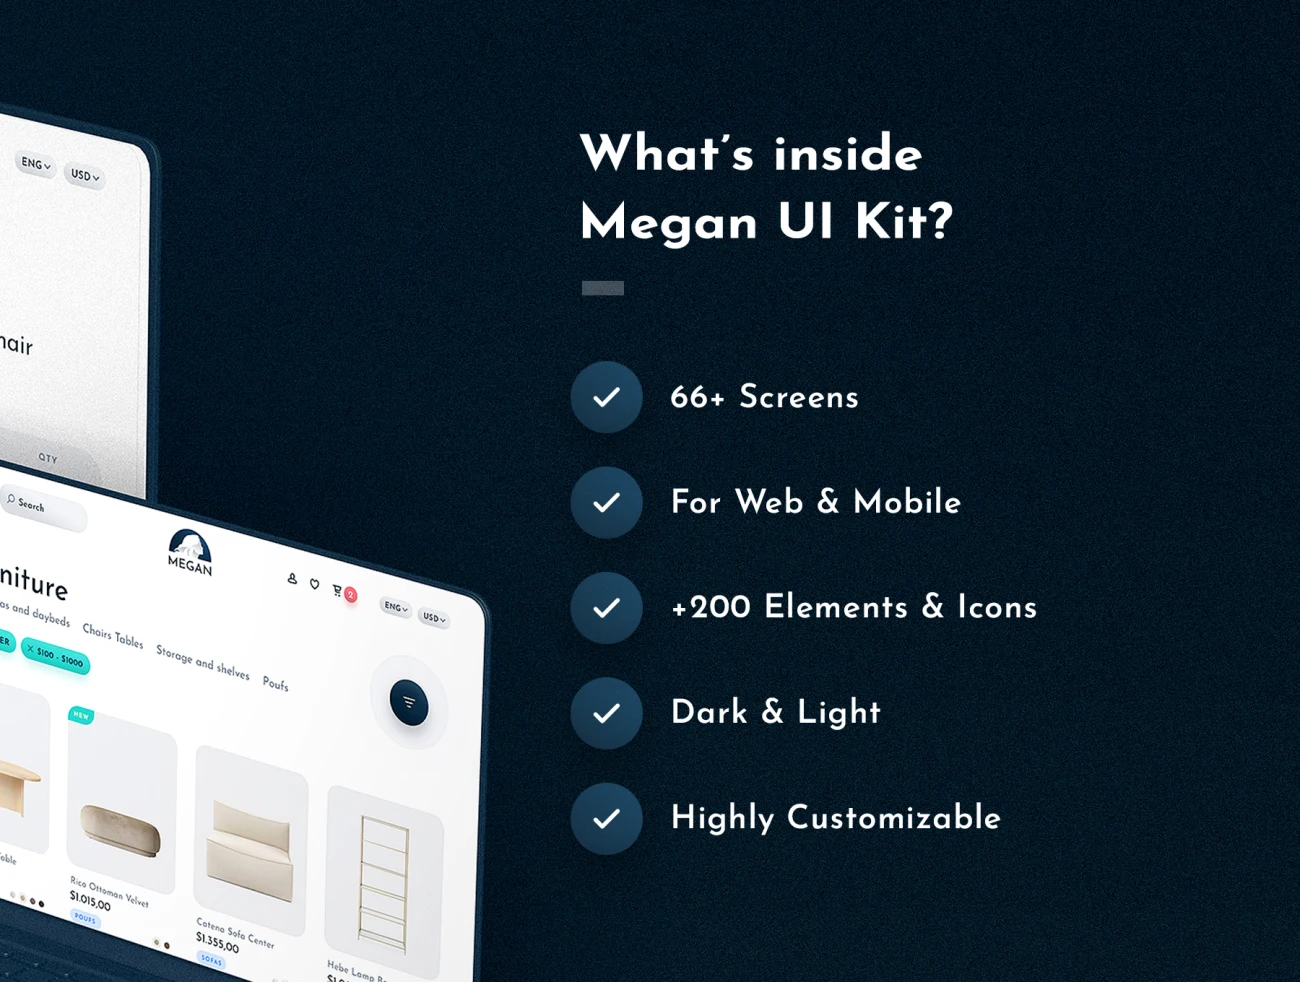 Megan Web UI 66屏时尚生活服务家居家电响应式电子商务UI设计套件-3D/图标、UI/UX、ui套件、主页、付款、卡片式、字体、支付、海报、着陆页、网站、网购、表单、详情-到位啦UI